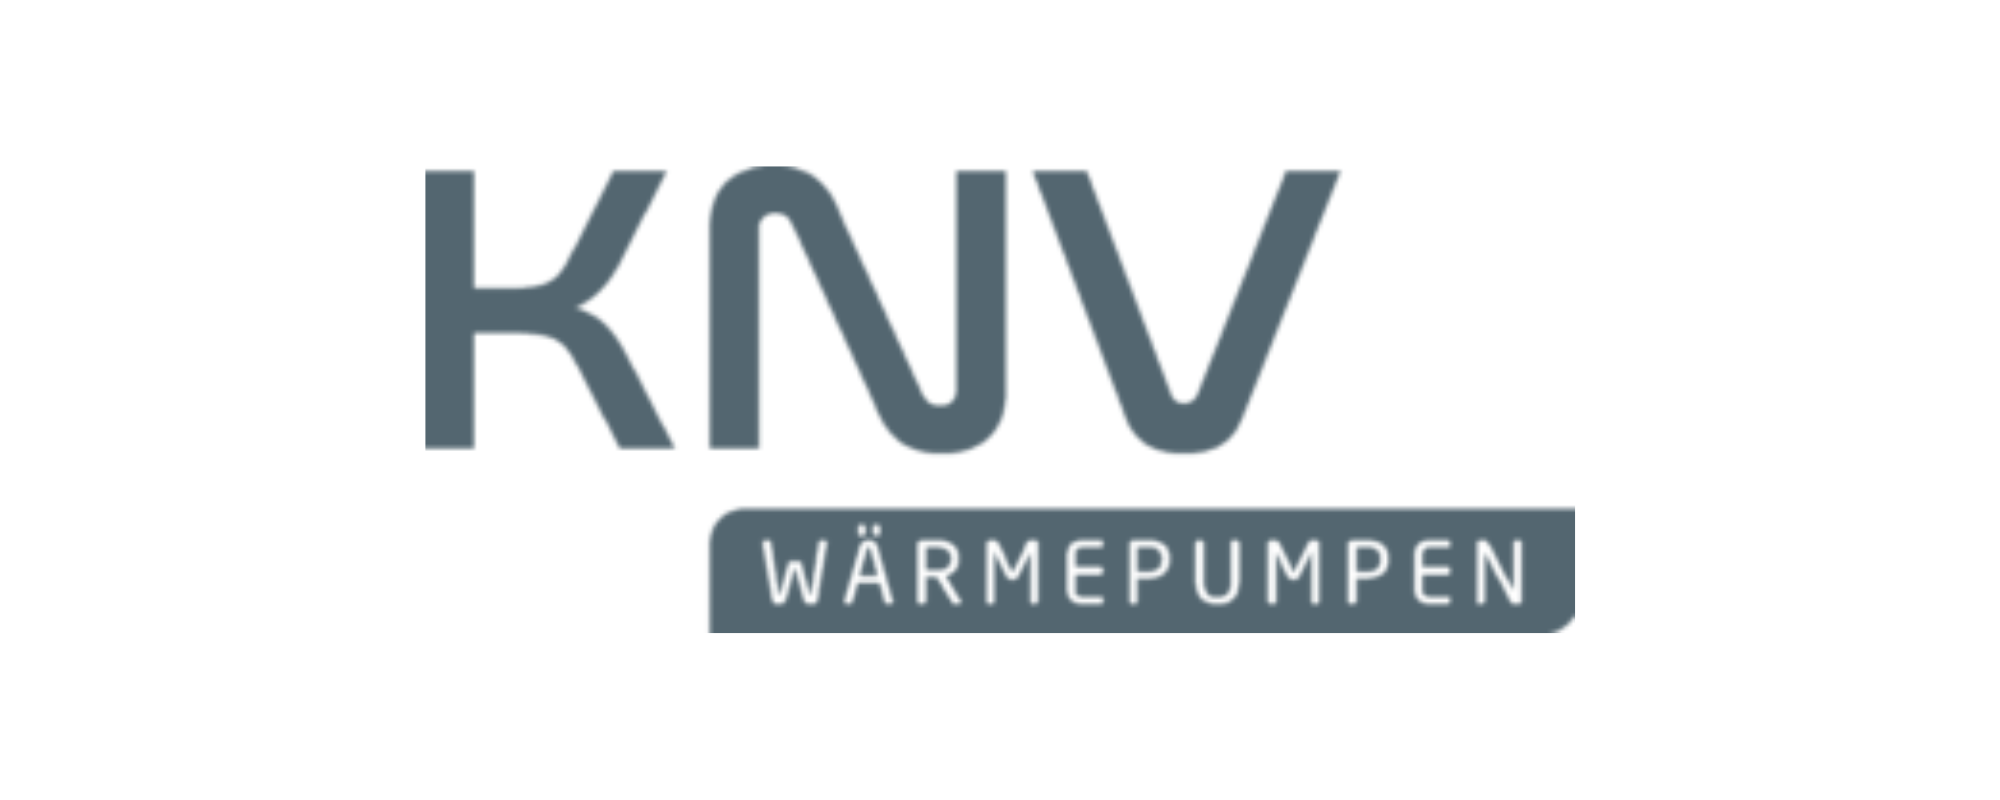 knv-logo